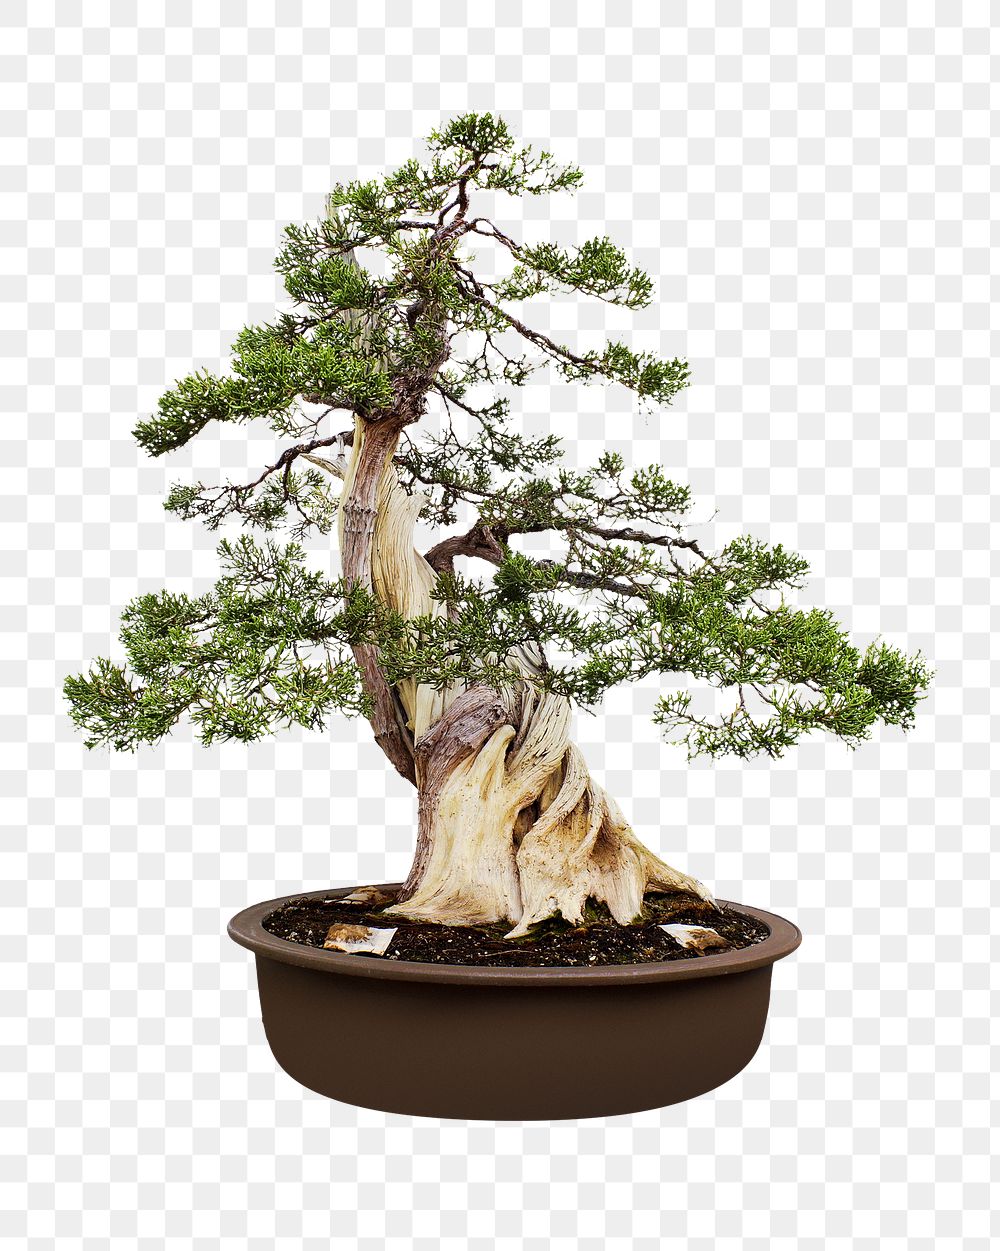 Pot bonsai planting png collage element, transparent background